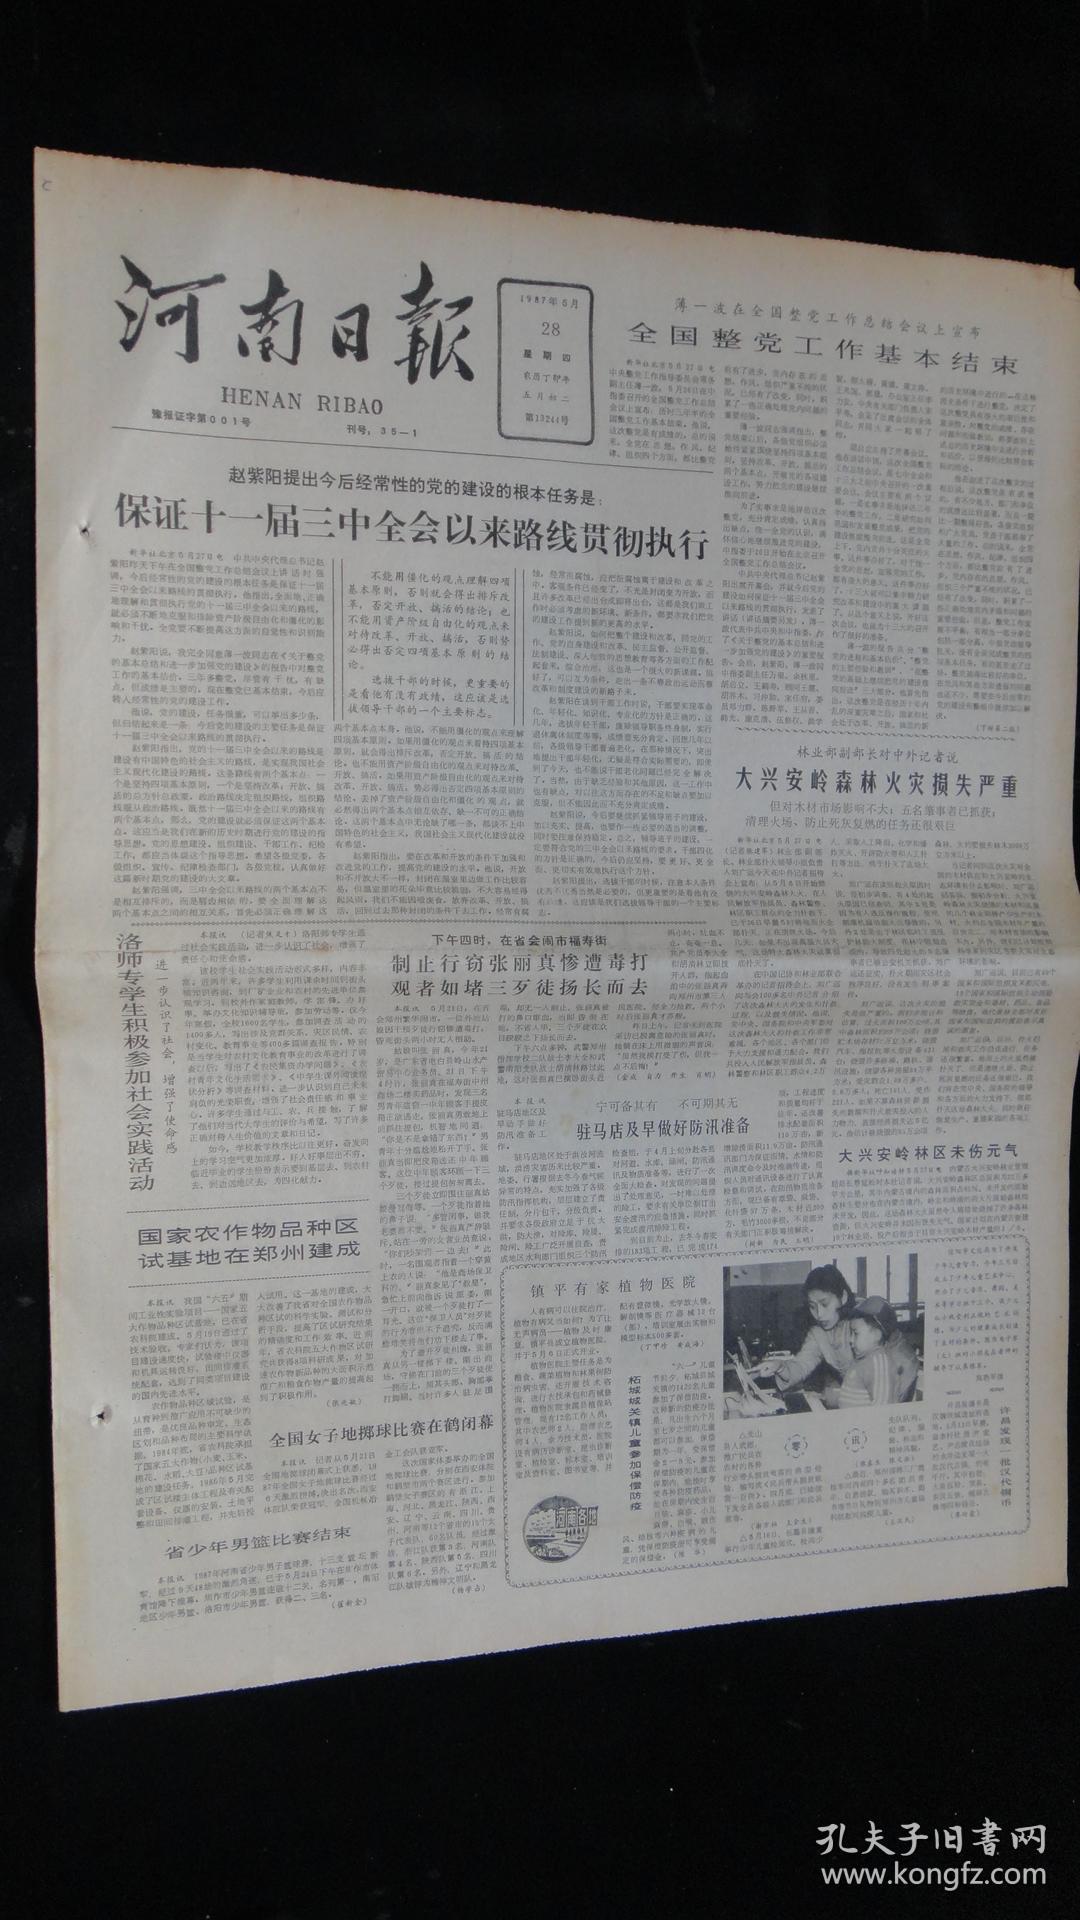 【报纸】河南日报 1987年5月28日【薄一波在